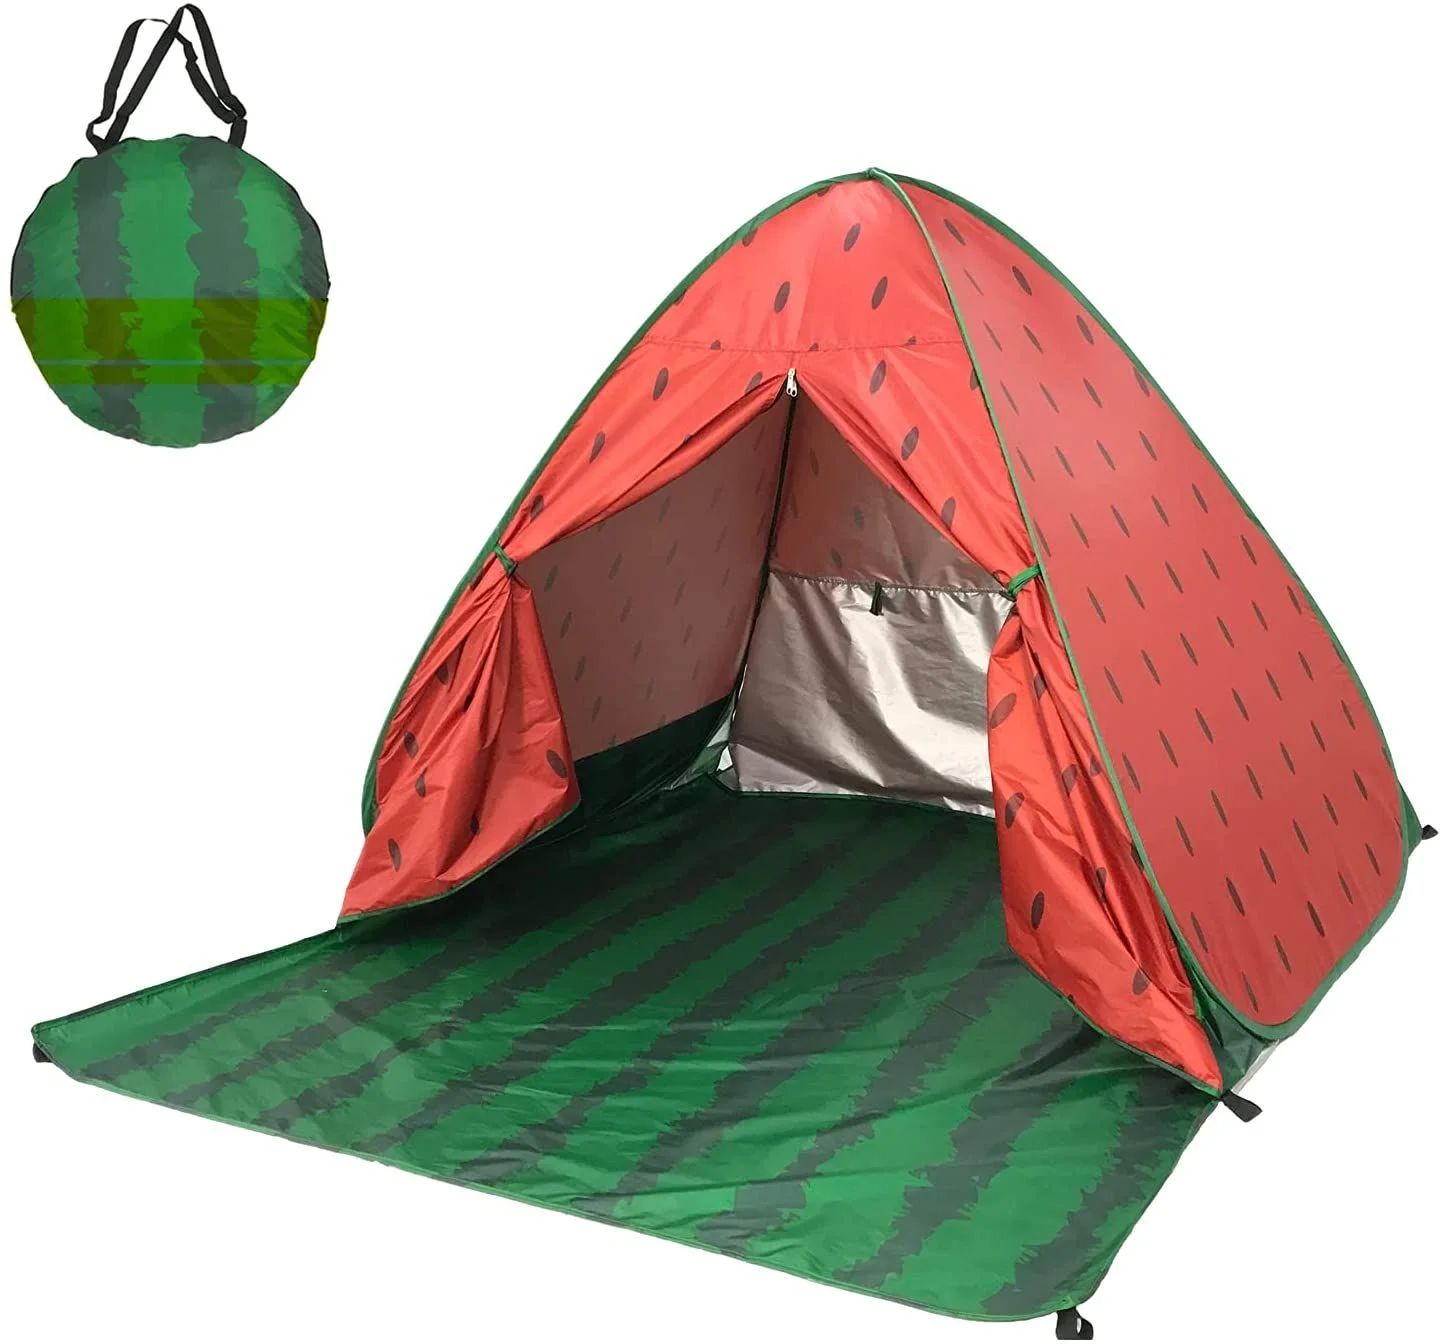 ポップアップテント テント ワンタッチテント 1人用 サンシェードテント ビーチテント 2人~3人用 簡易テント 超軽量 通気 組み立て不要